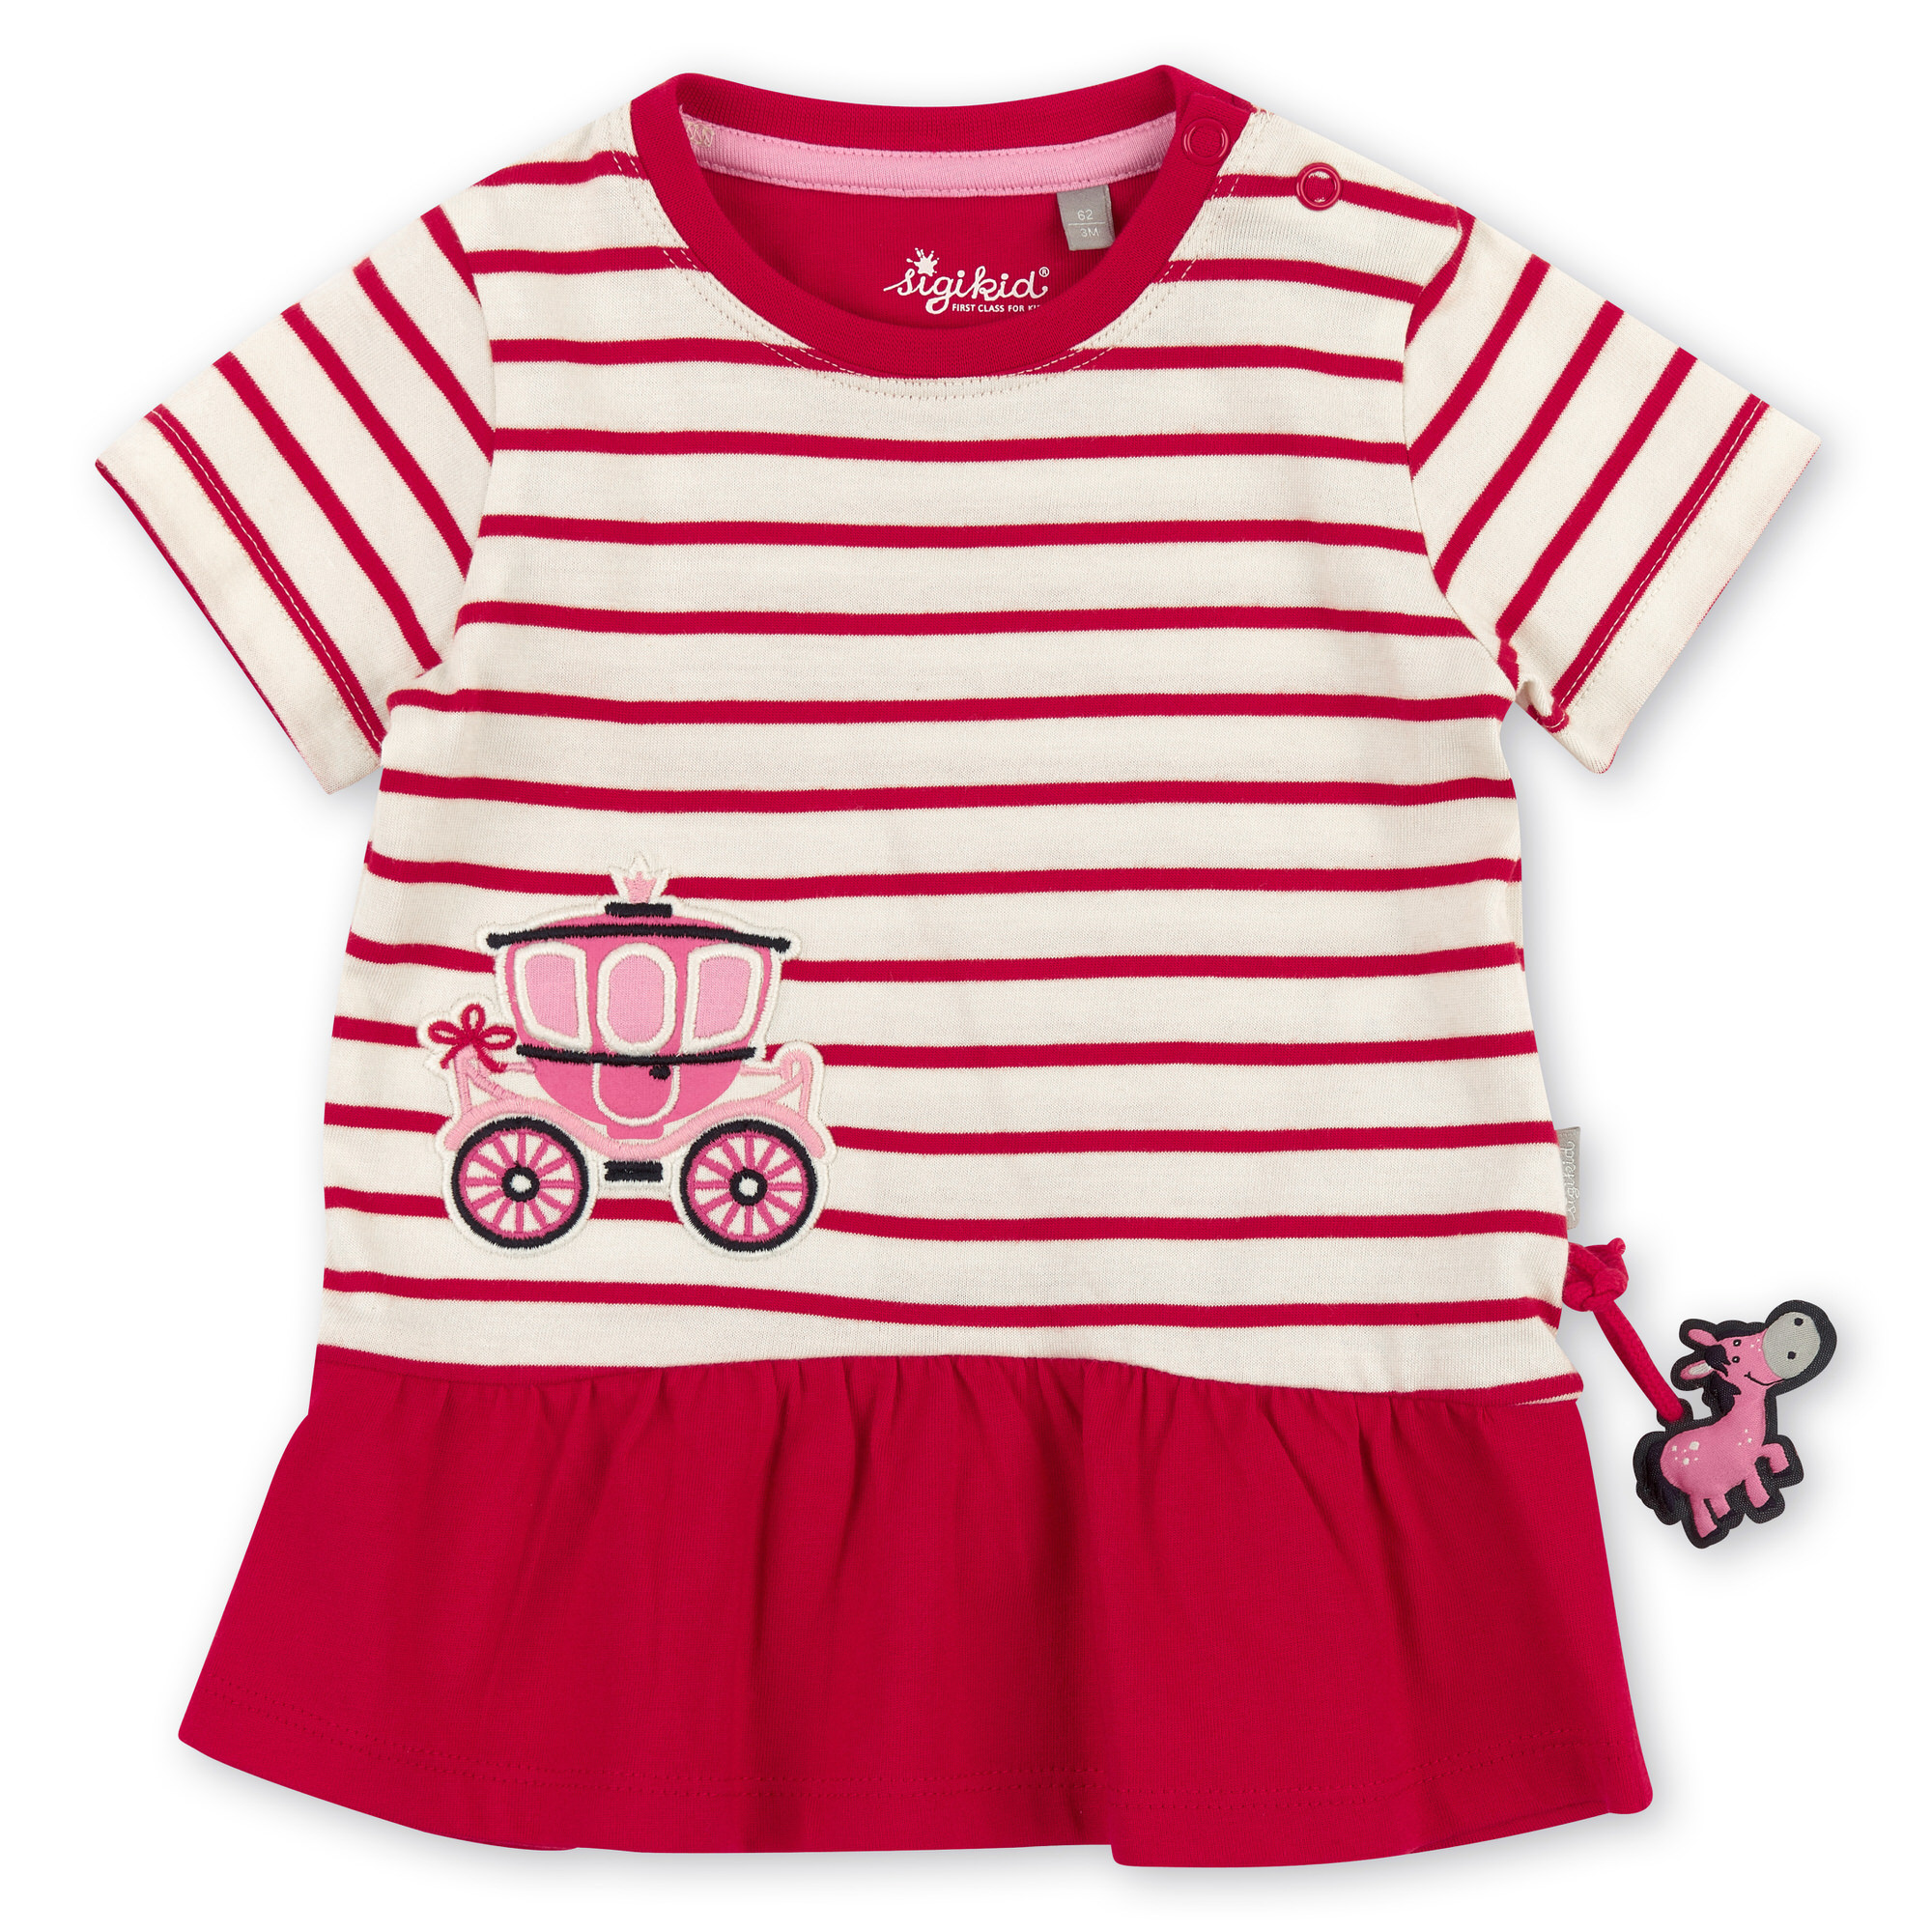 Baby Kleid rot/weiß gestreift mit Märchenkutsche Motiv